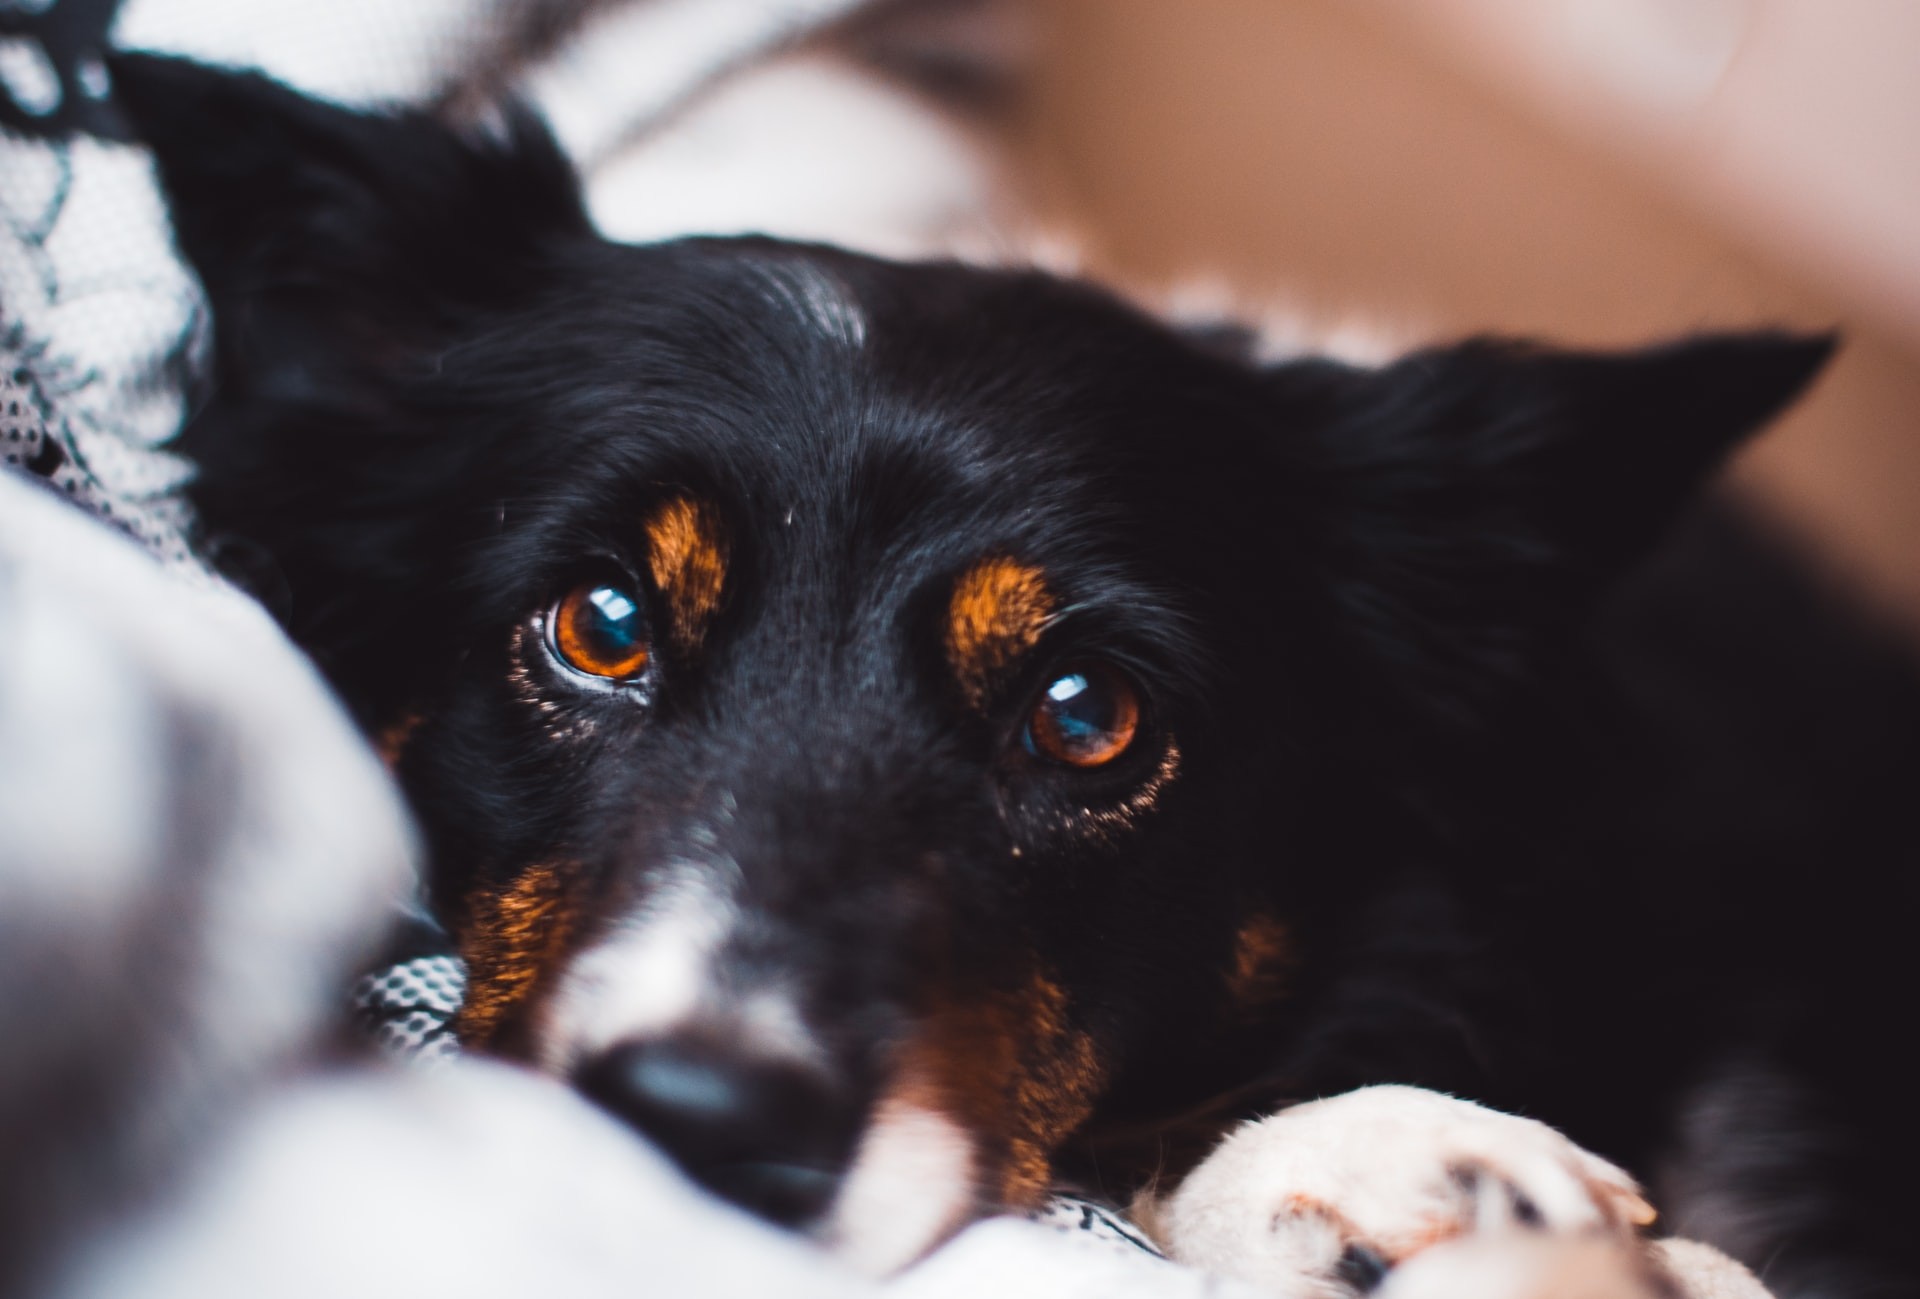 Cães domésticos trocam mais olhares com humanos, conclui estudo da USP (Foto: Simon Hesthaven/Unsplash)